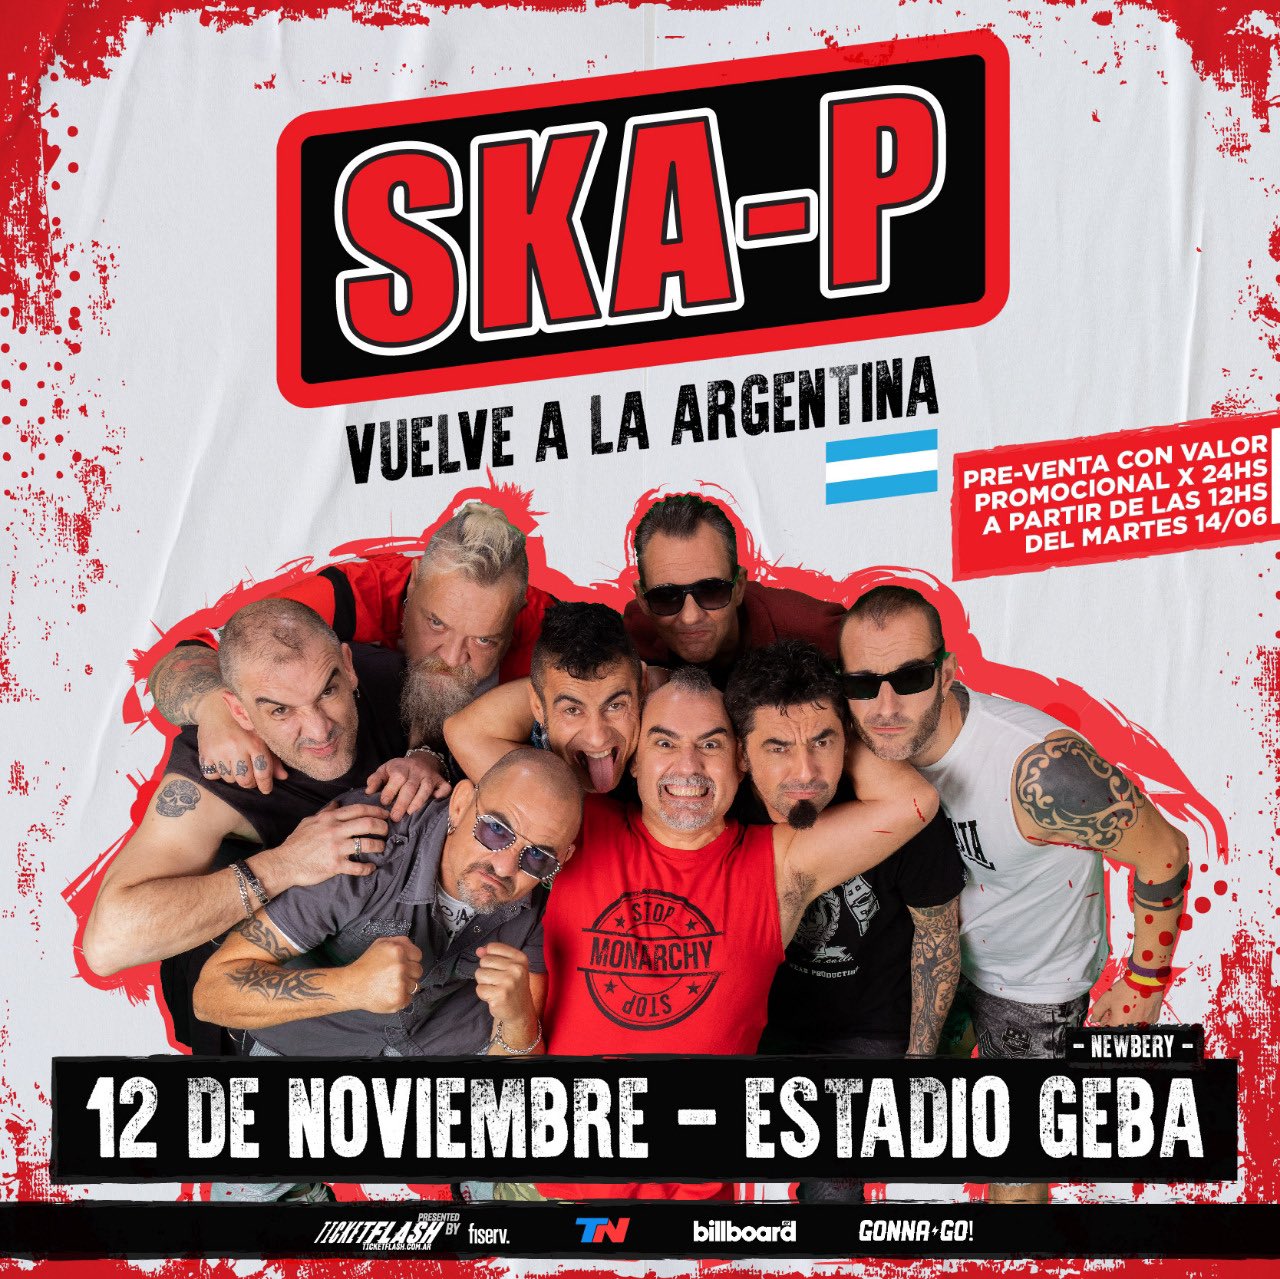 Ska-P en Argentina